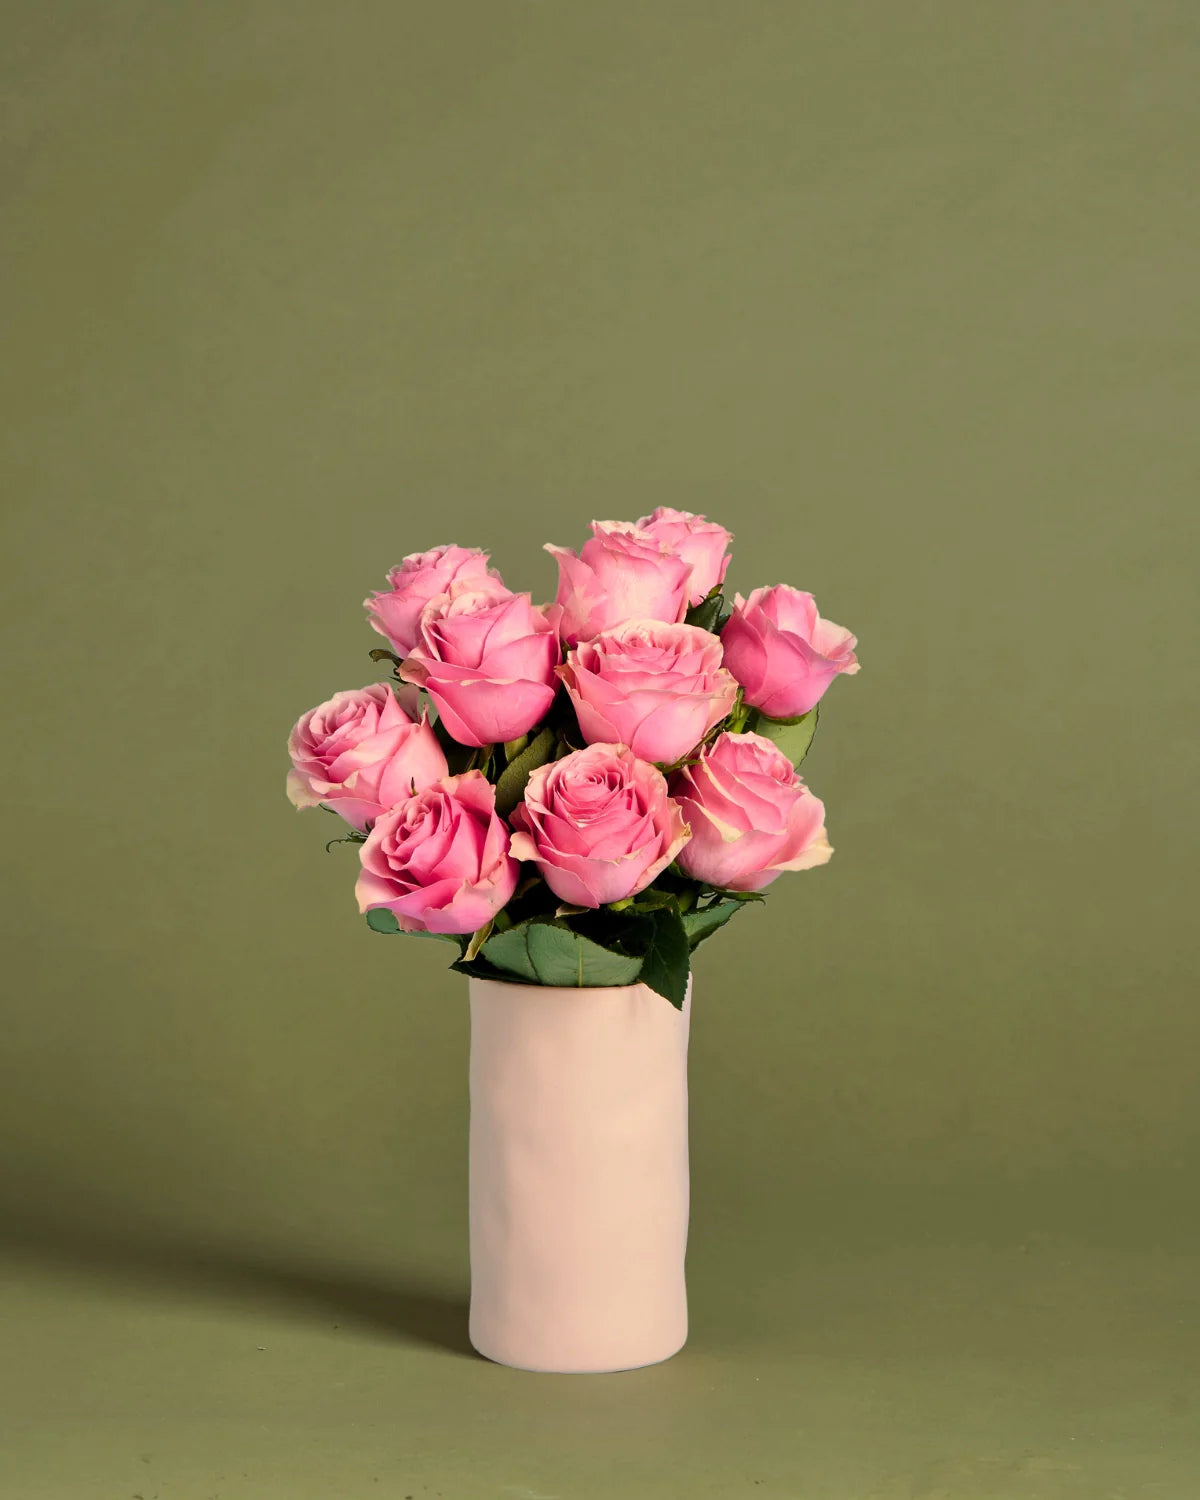 Sympathy Roses + Vase